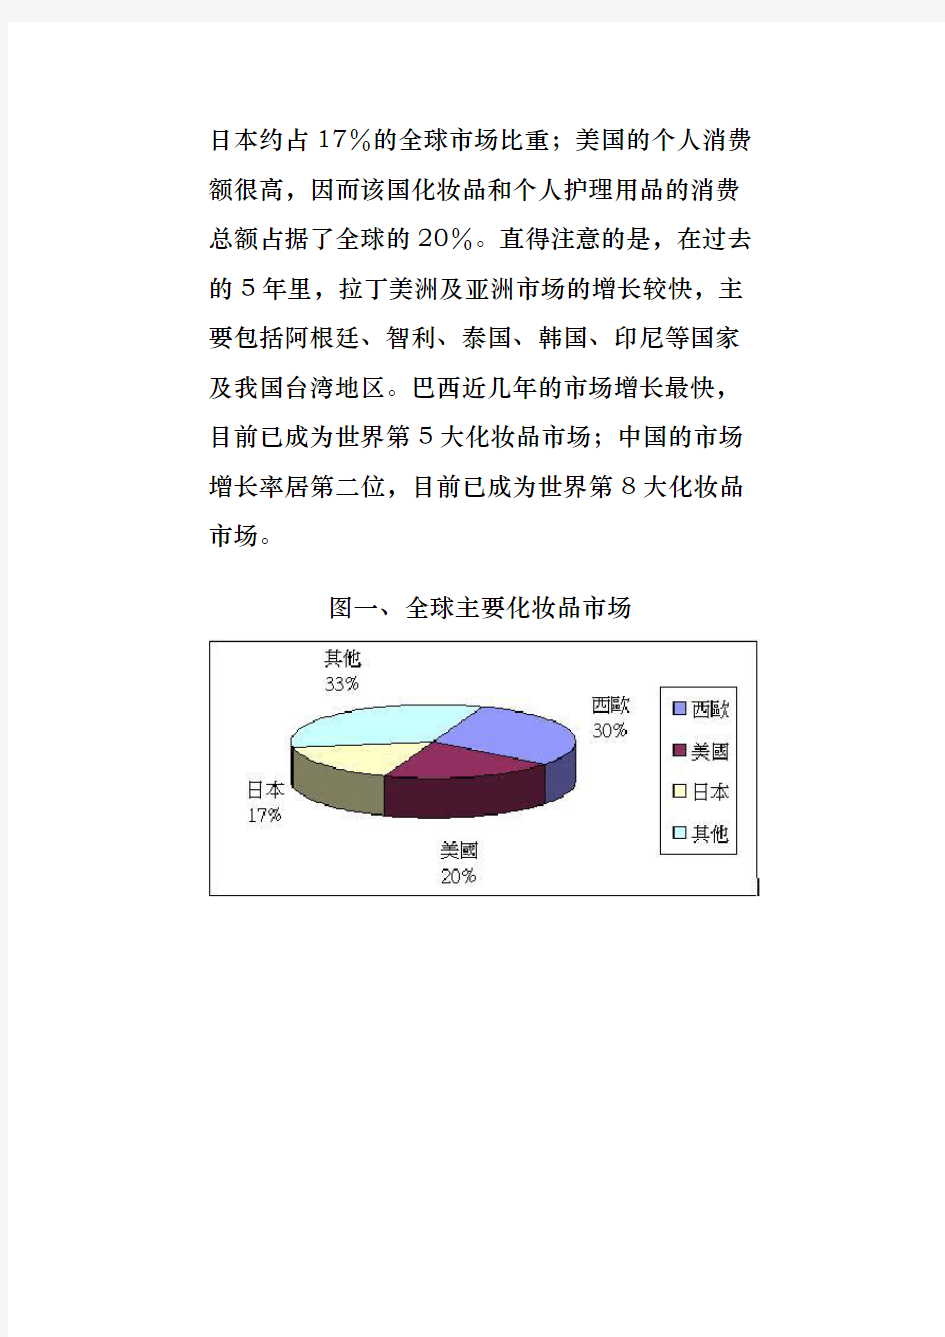 中国化妆品市场发展状况研究报告